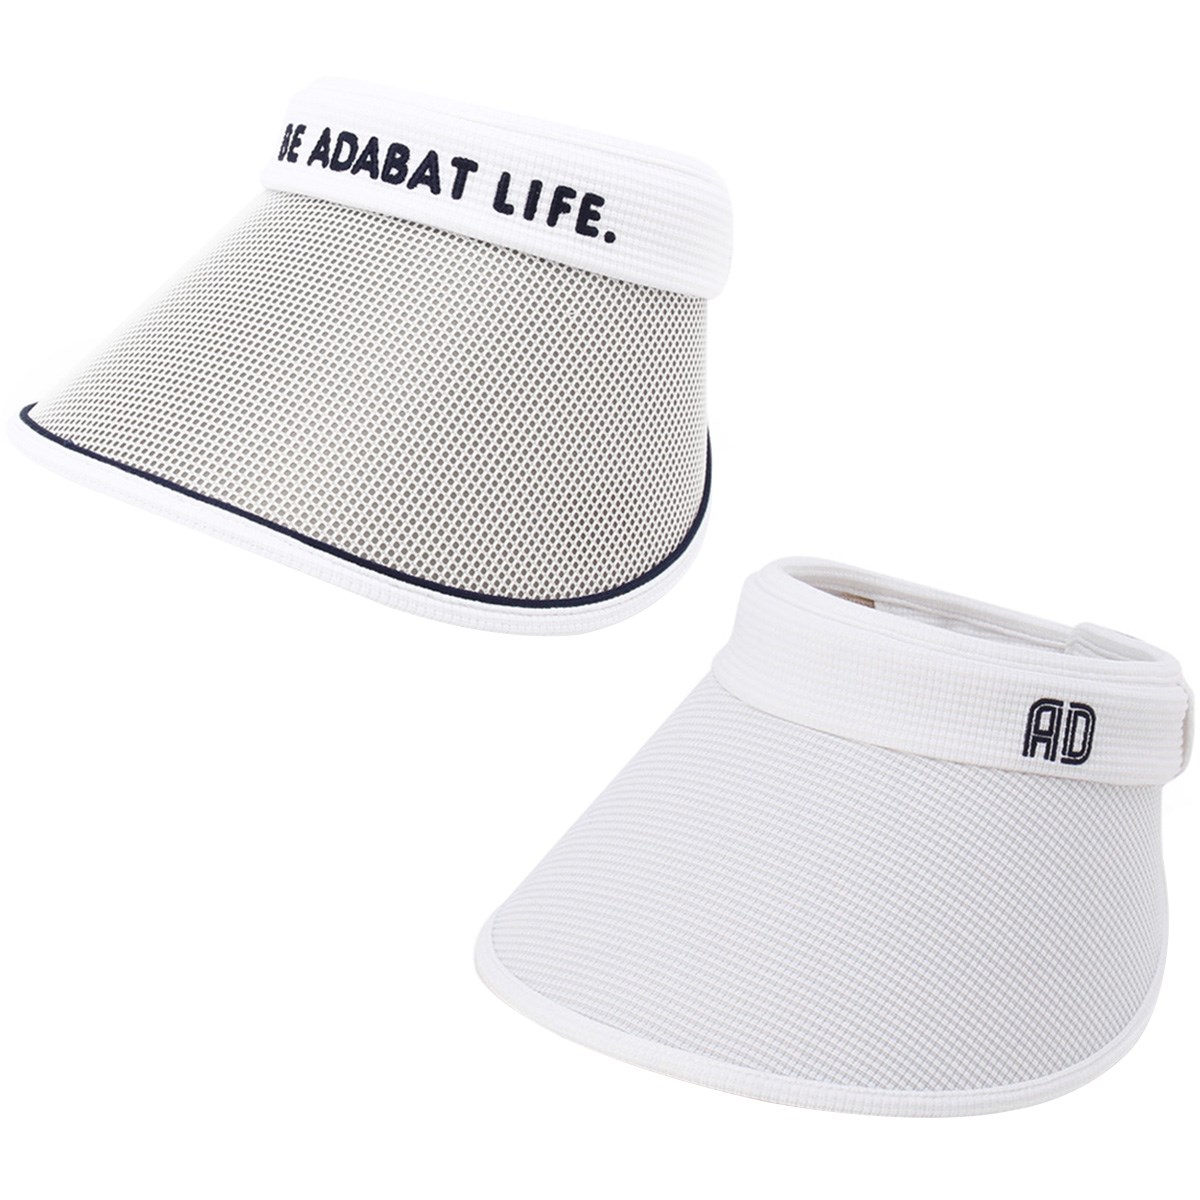  [2018年モデル] アダバット リバーシブル UV針抜きリップル サンバイザー ゴルフウェア 帽子